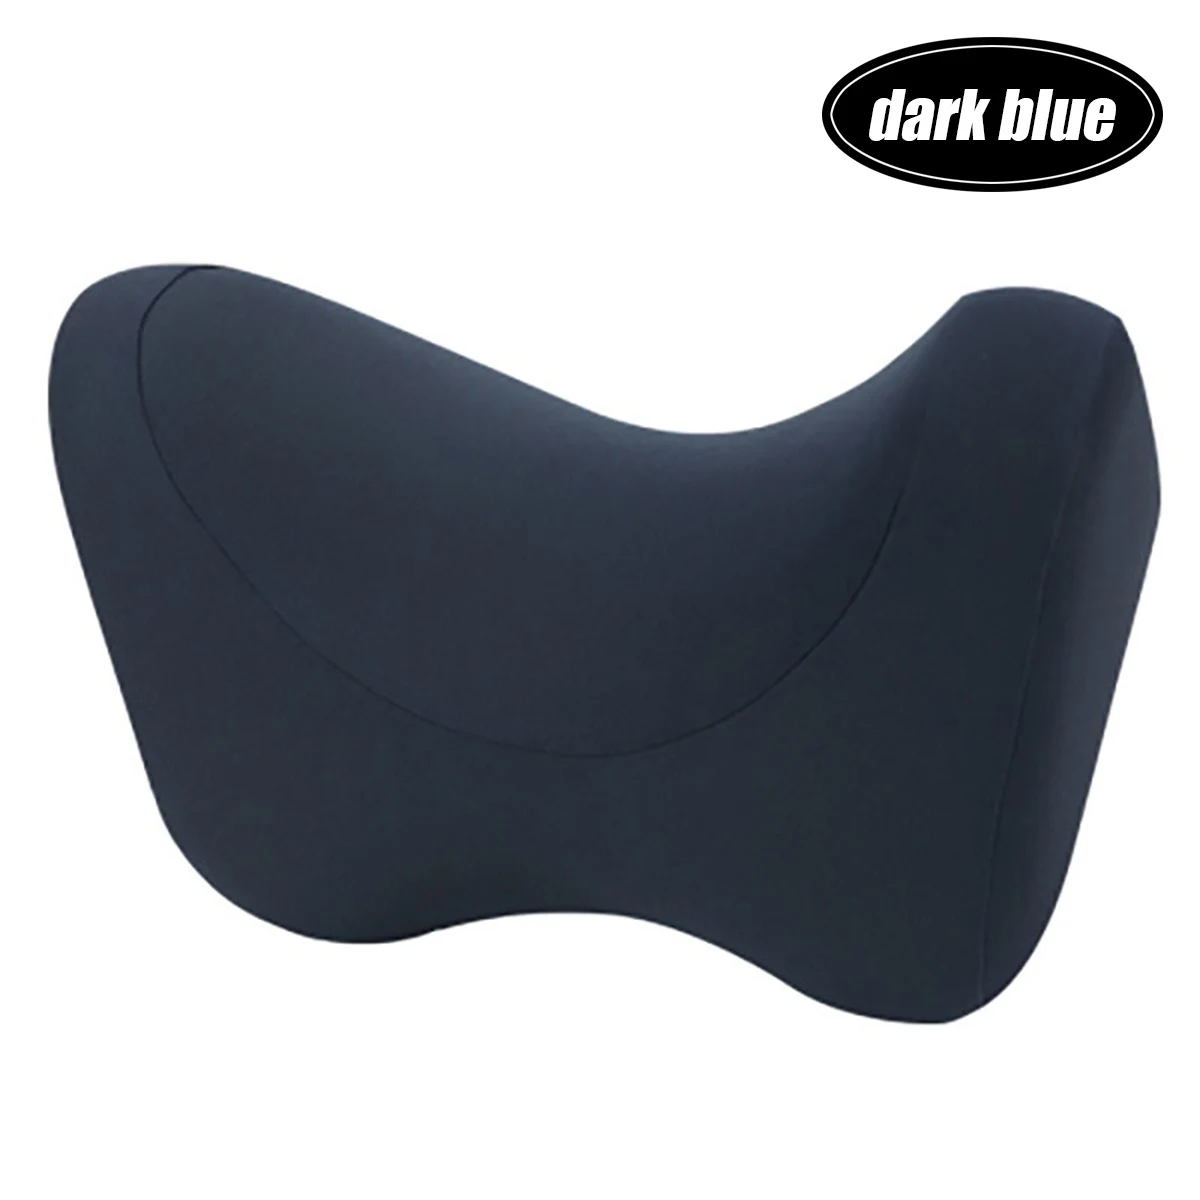 Подголовник автомобиля подушка для сиденья стул в авто пены памяти Полиэстеровая подушка ткань чехол мягкая голова отдых путешествия офис поддержка - Цвет: Dark blue